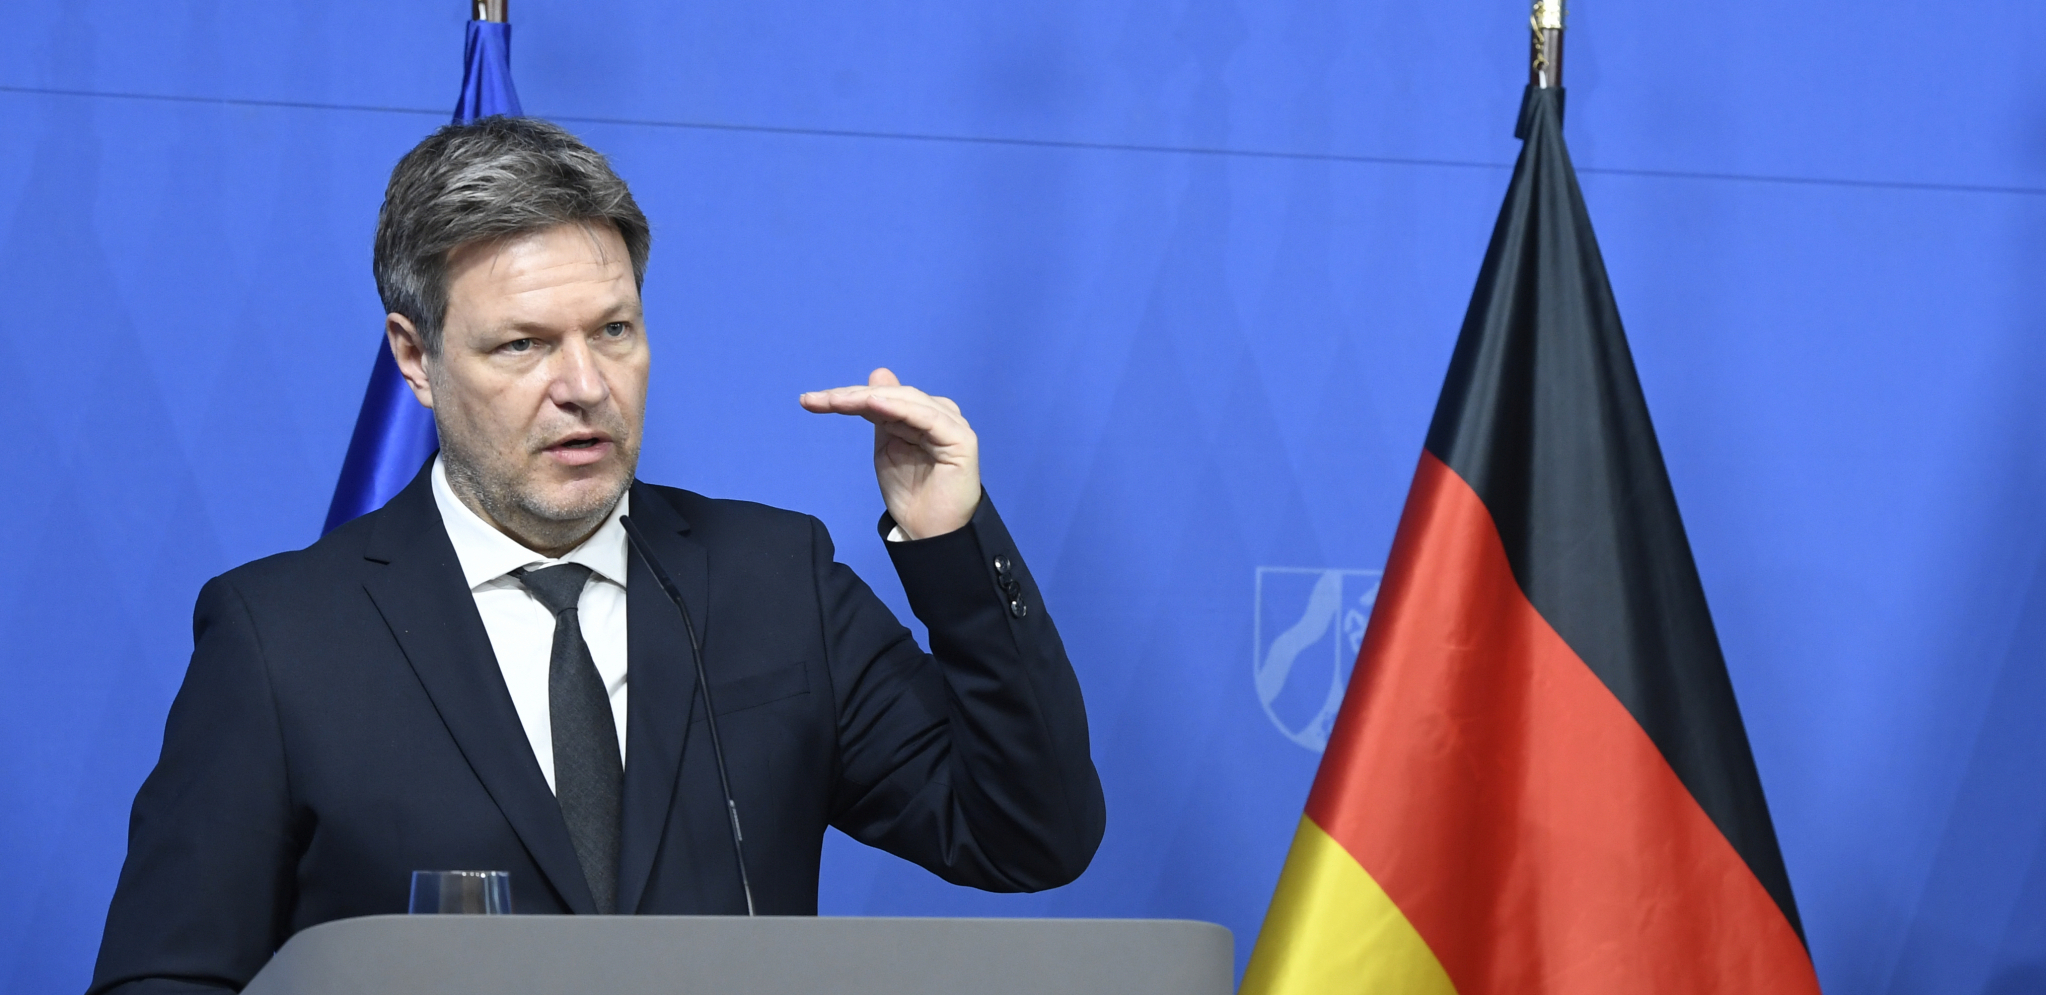 POČINJE DA SE RASPADA! Šok izjava nemačkog ministra o jedinstvu EU